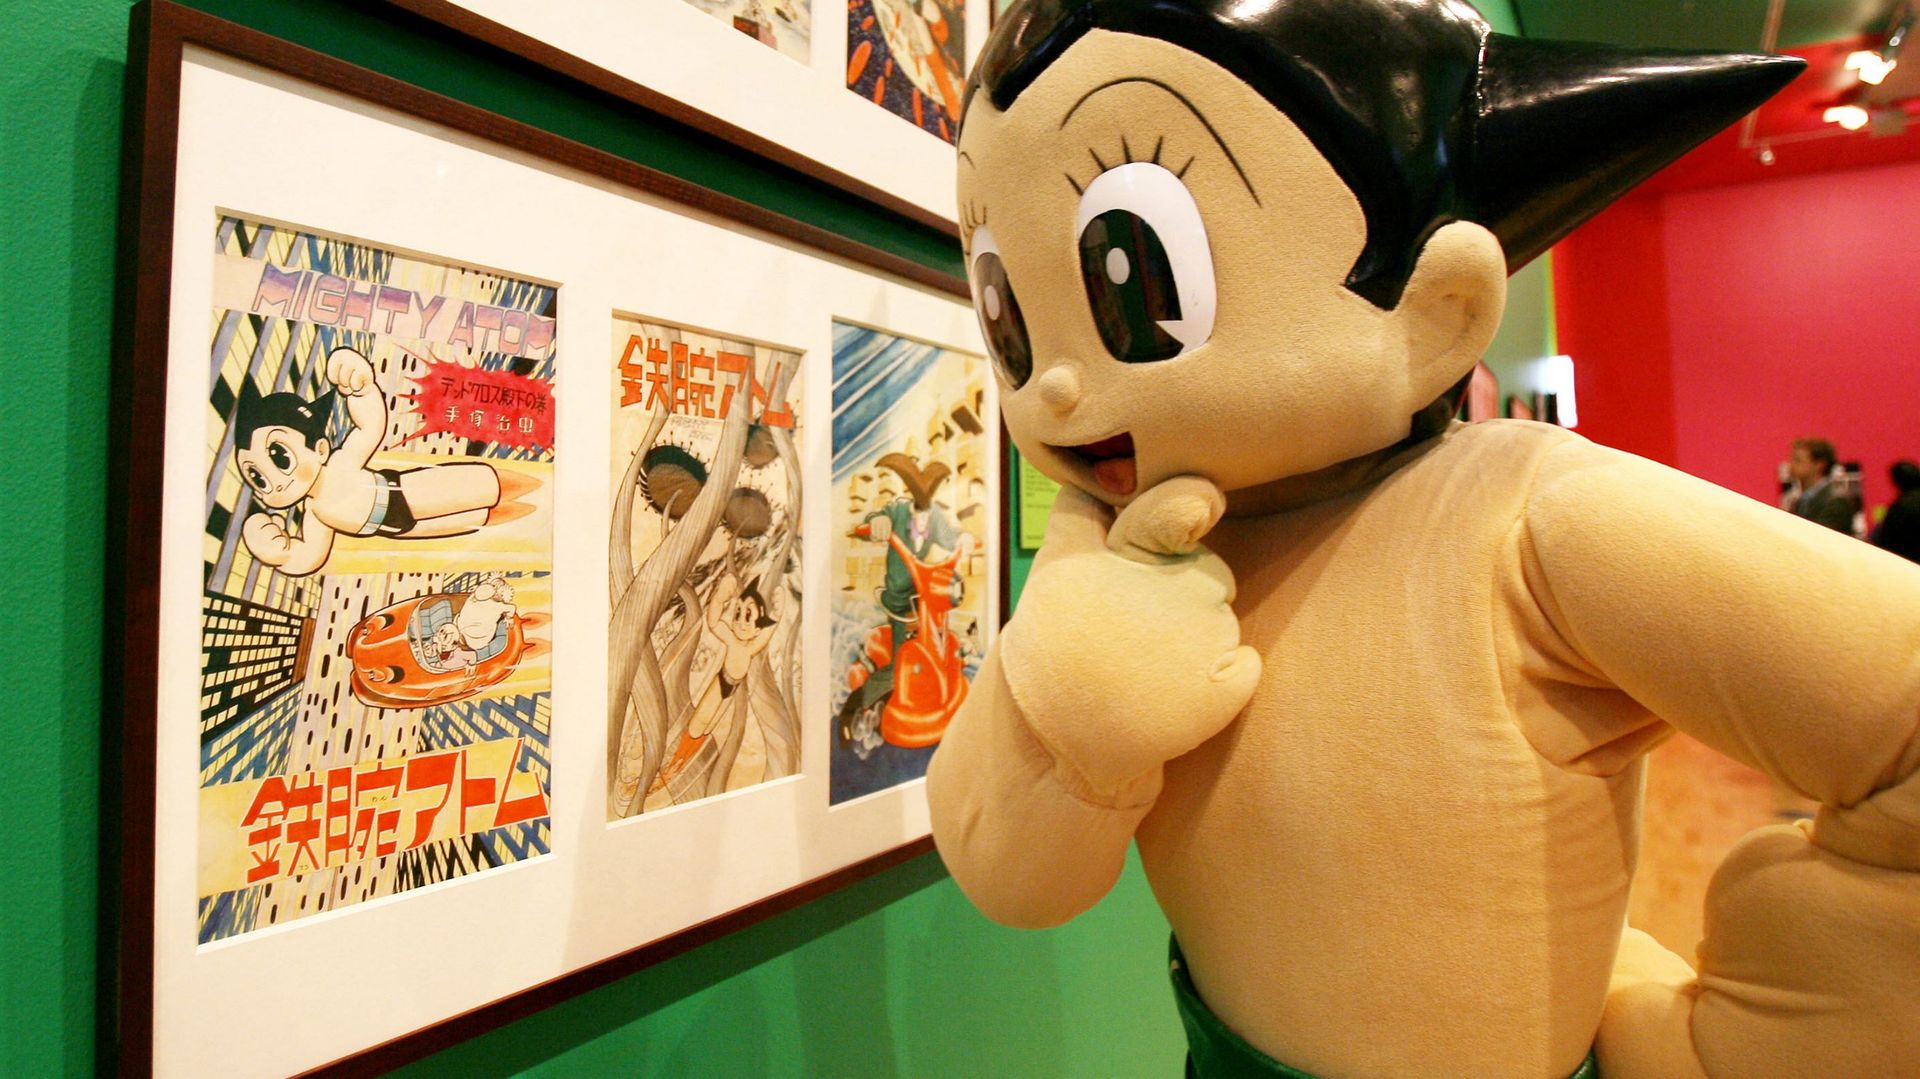 "Astro Boy" (ou en français "Astro, le petit robot") est l’œuvre la plus connue d’Osamu Tezuka (1928-1989) et un classique du manga.